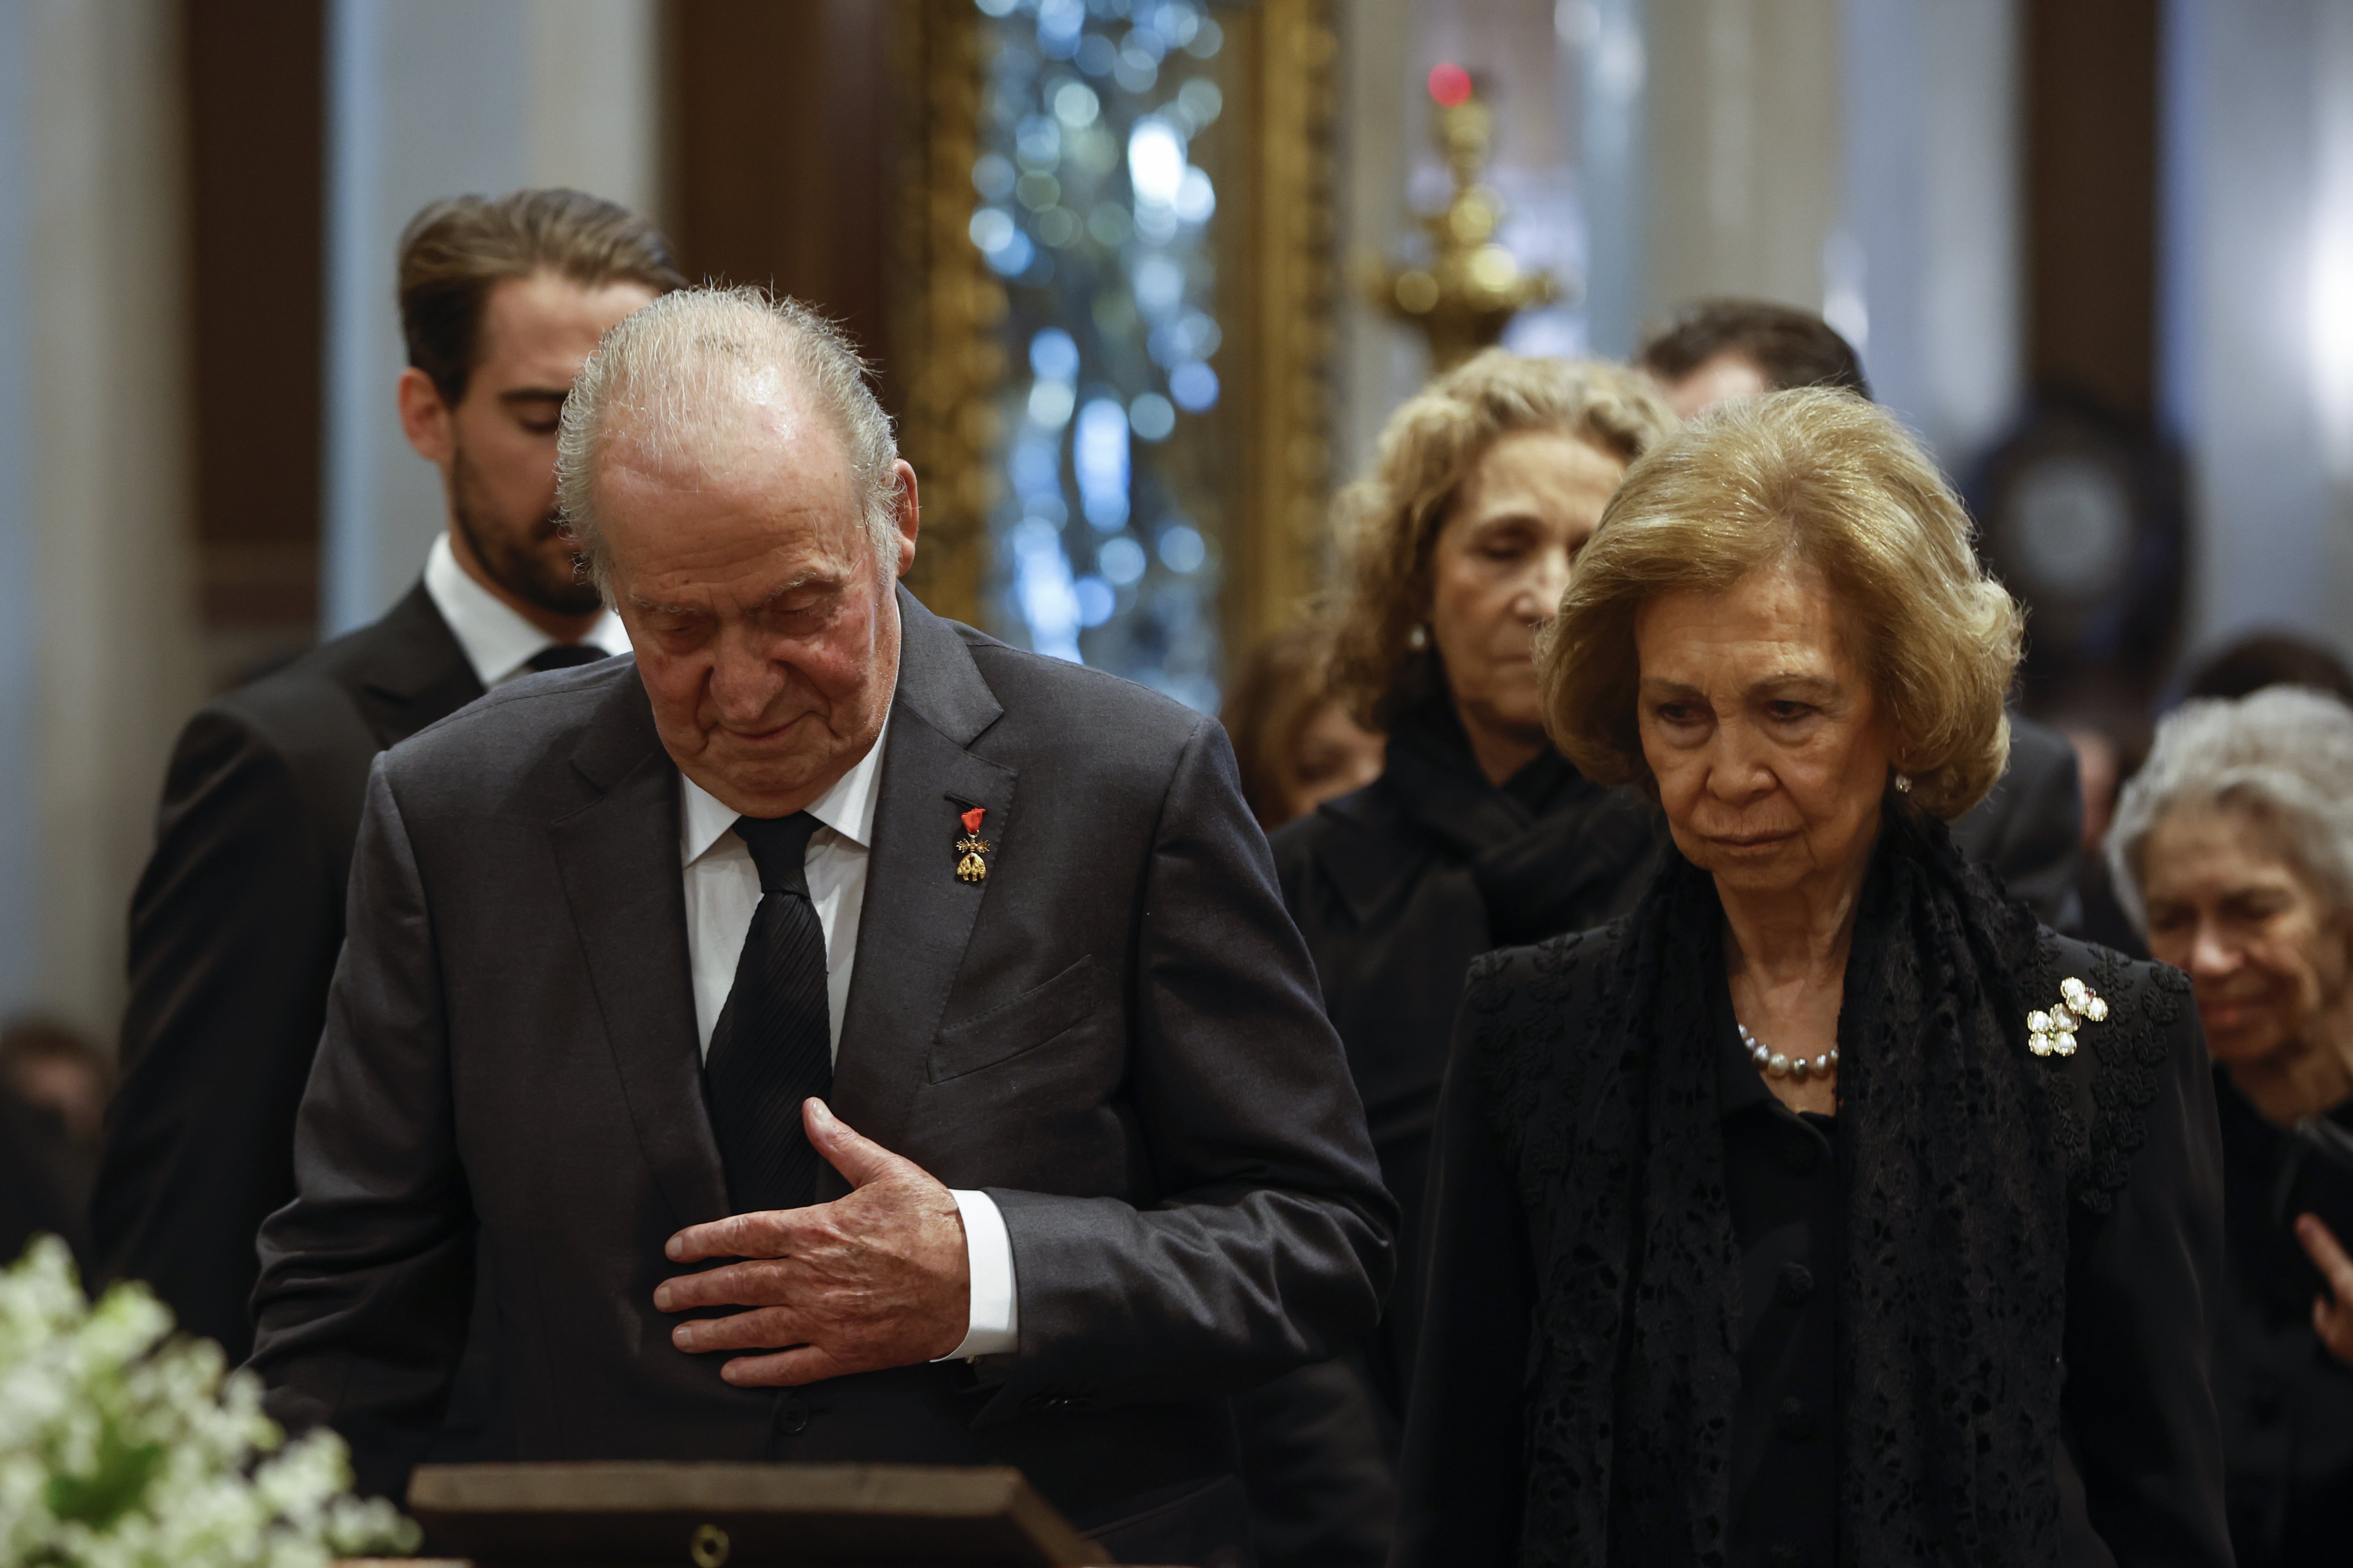 La reina Sofía y Juan Carlos I, separados hasta en la muerte, no quieren que los entierren juntos